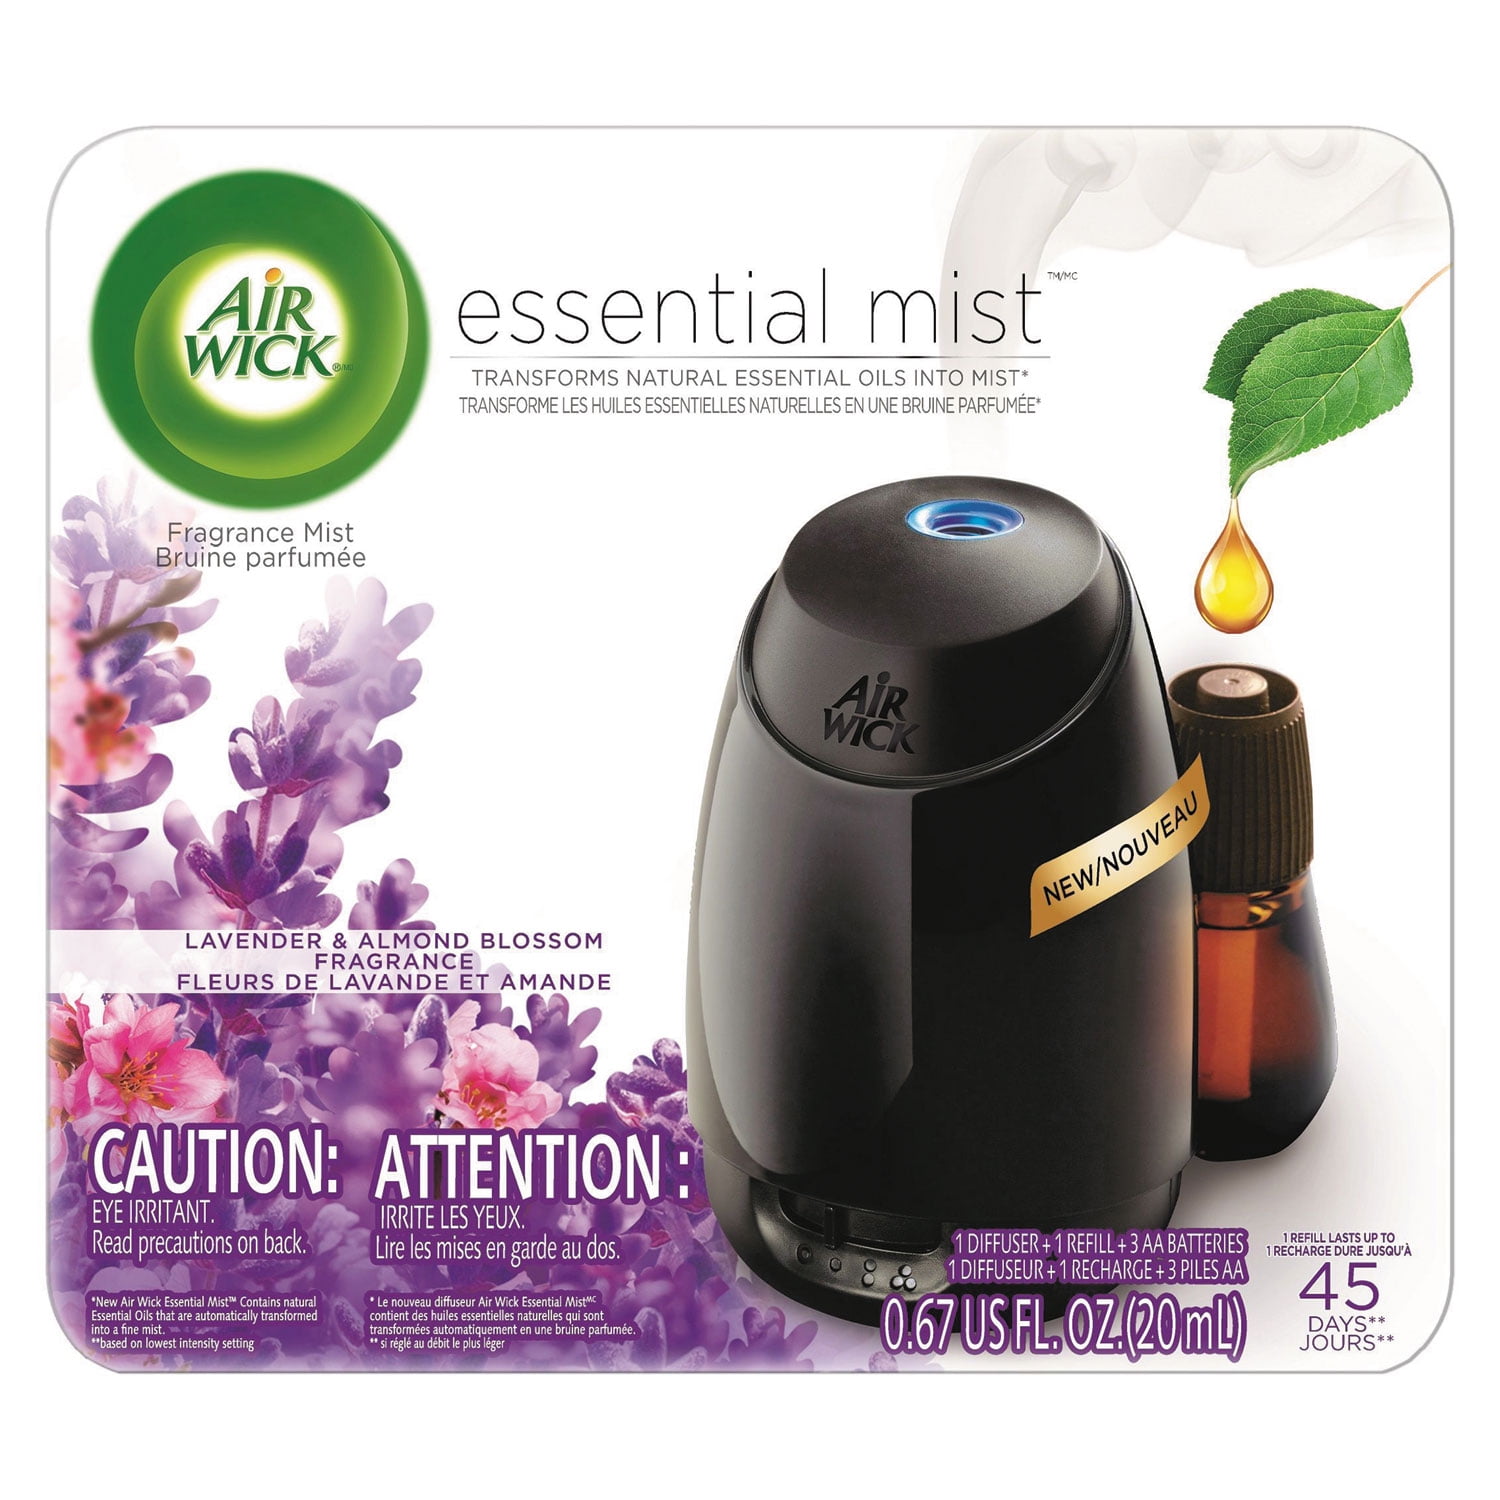 AIR WICK Essential Mist diffuseur automatique aux huiles